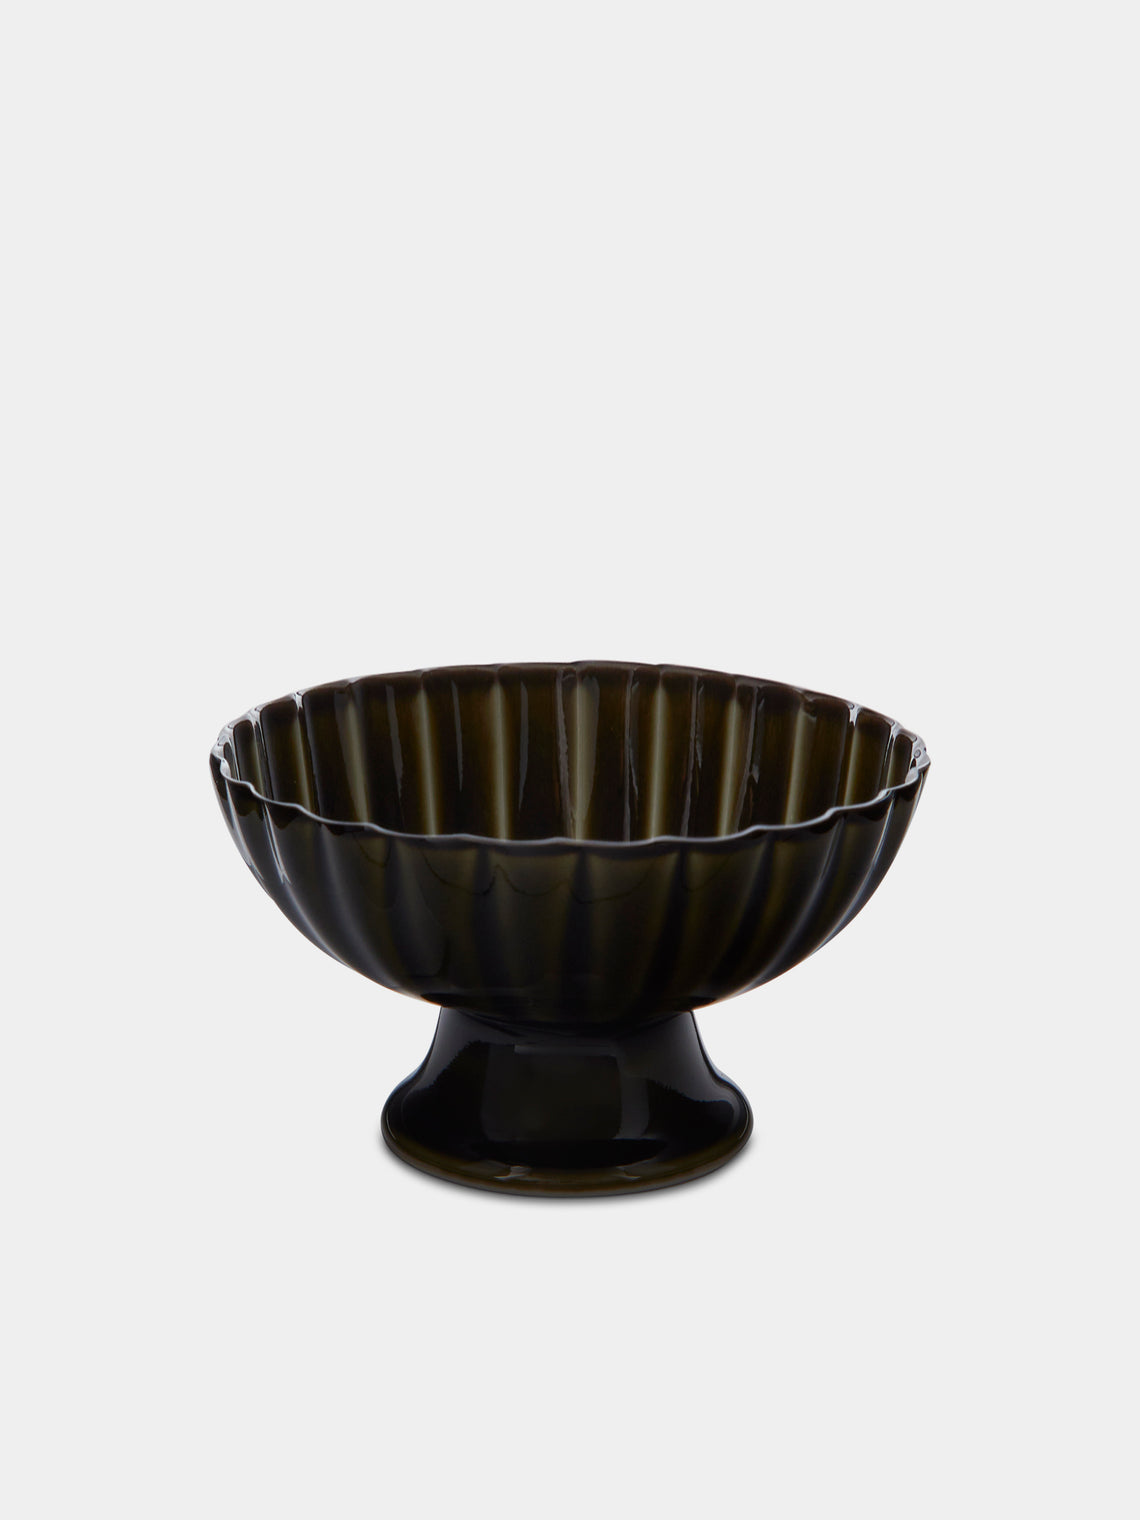 Kaneko Kohyo - Giyaman Urushi Ceramic Dessert Cups (Set of 4) - Green - ABASK - 